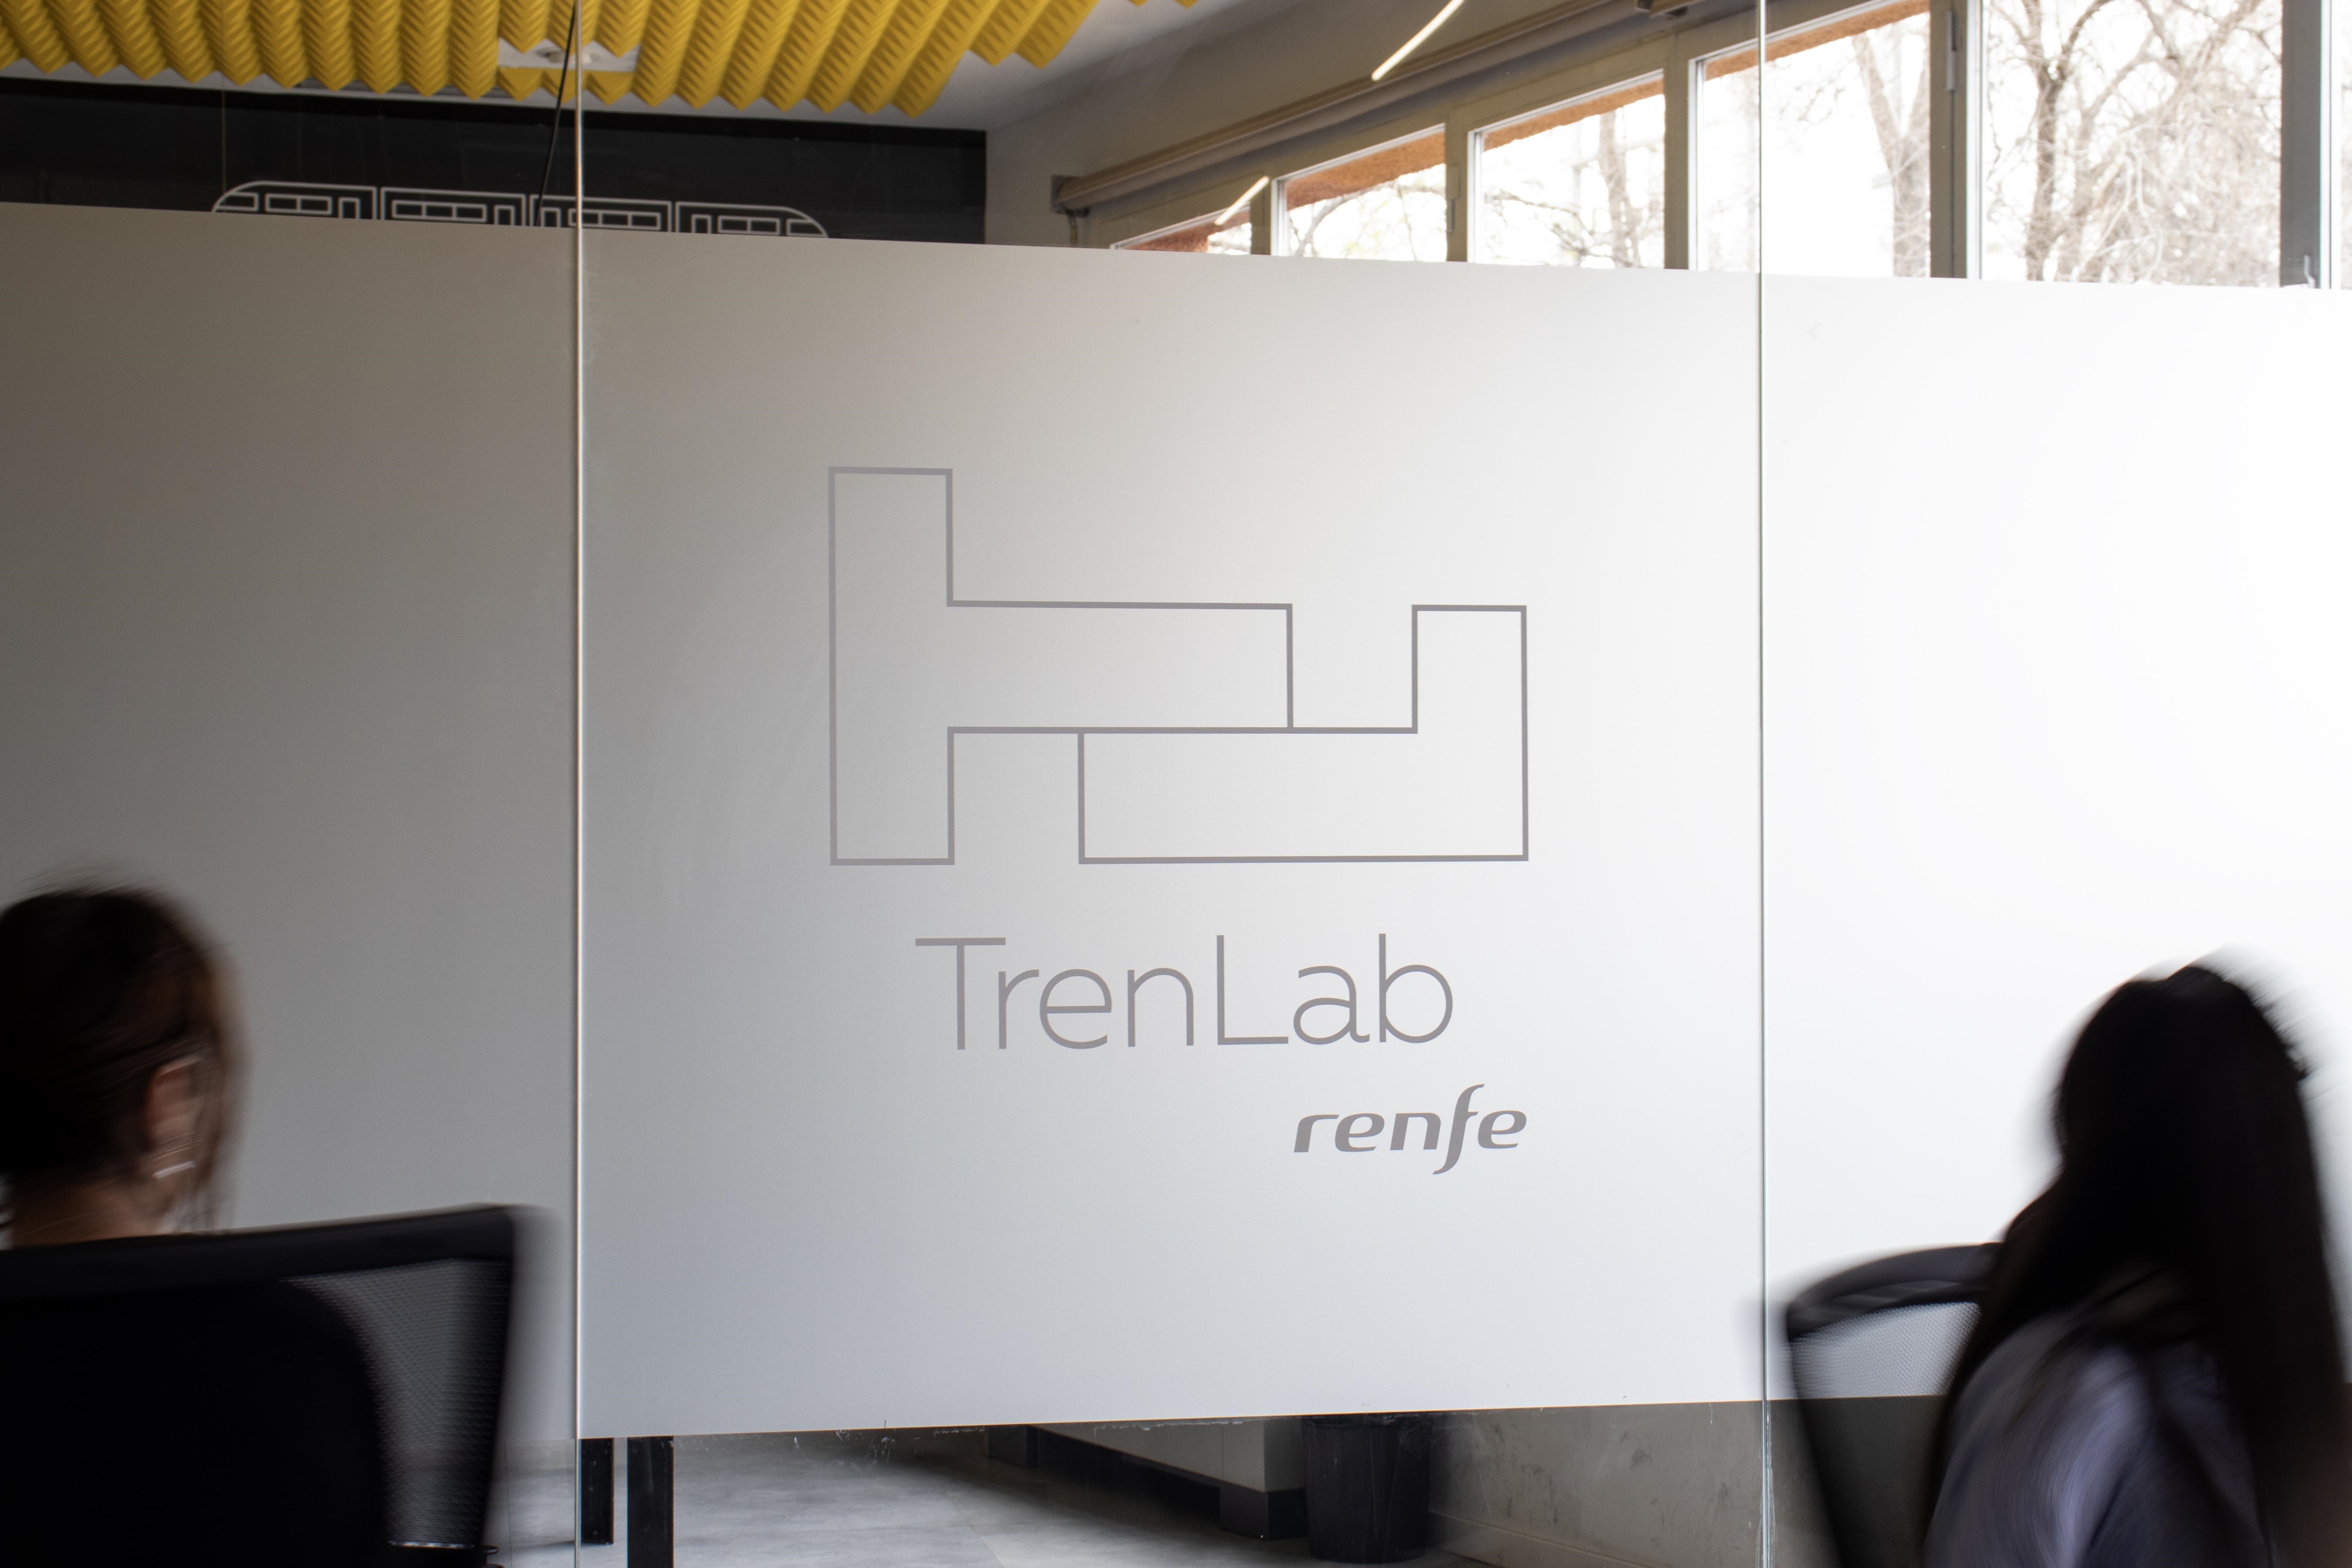 Innovación, al tren: embarcan los cinco proyectos de TrenLab, la aceleradora de start-ups de Renfe